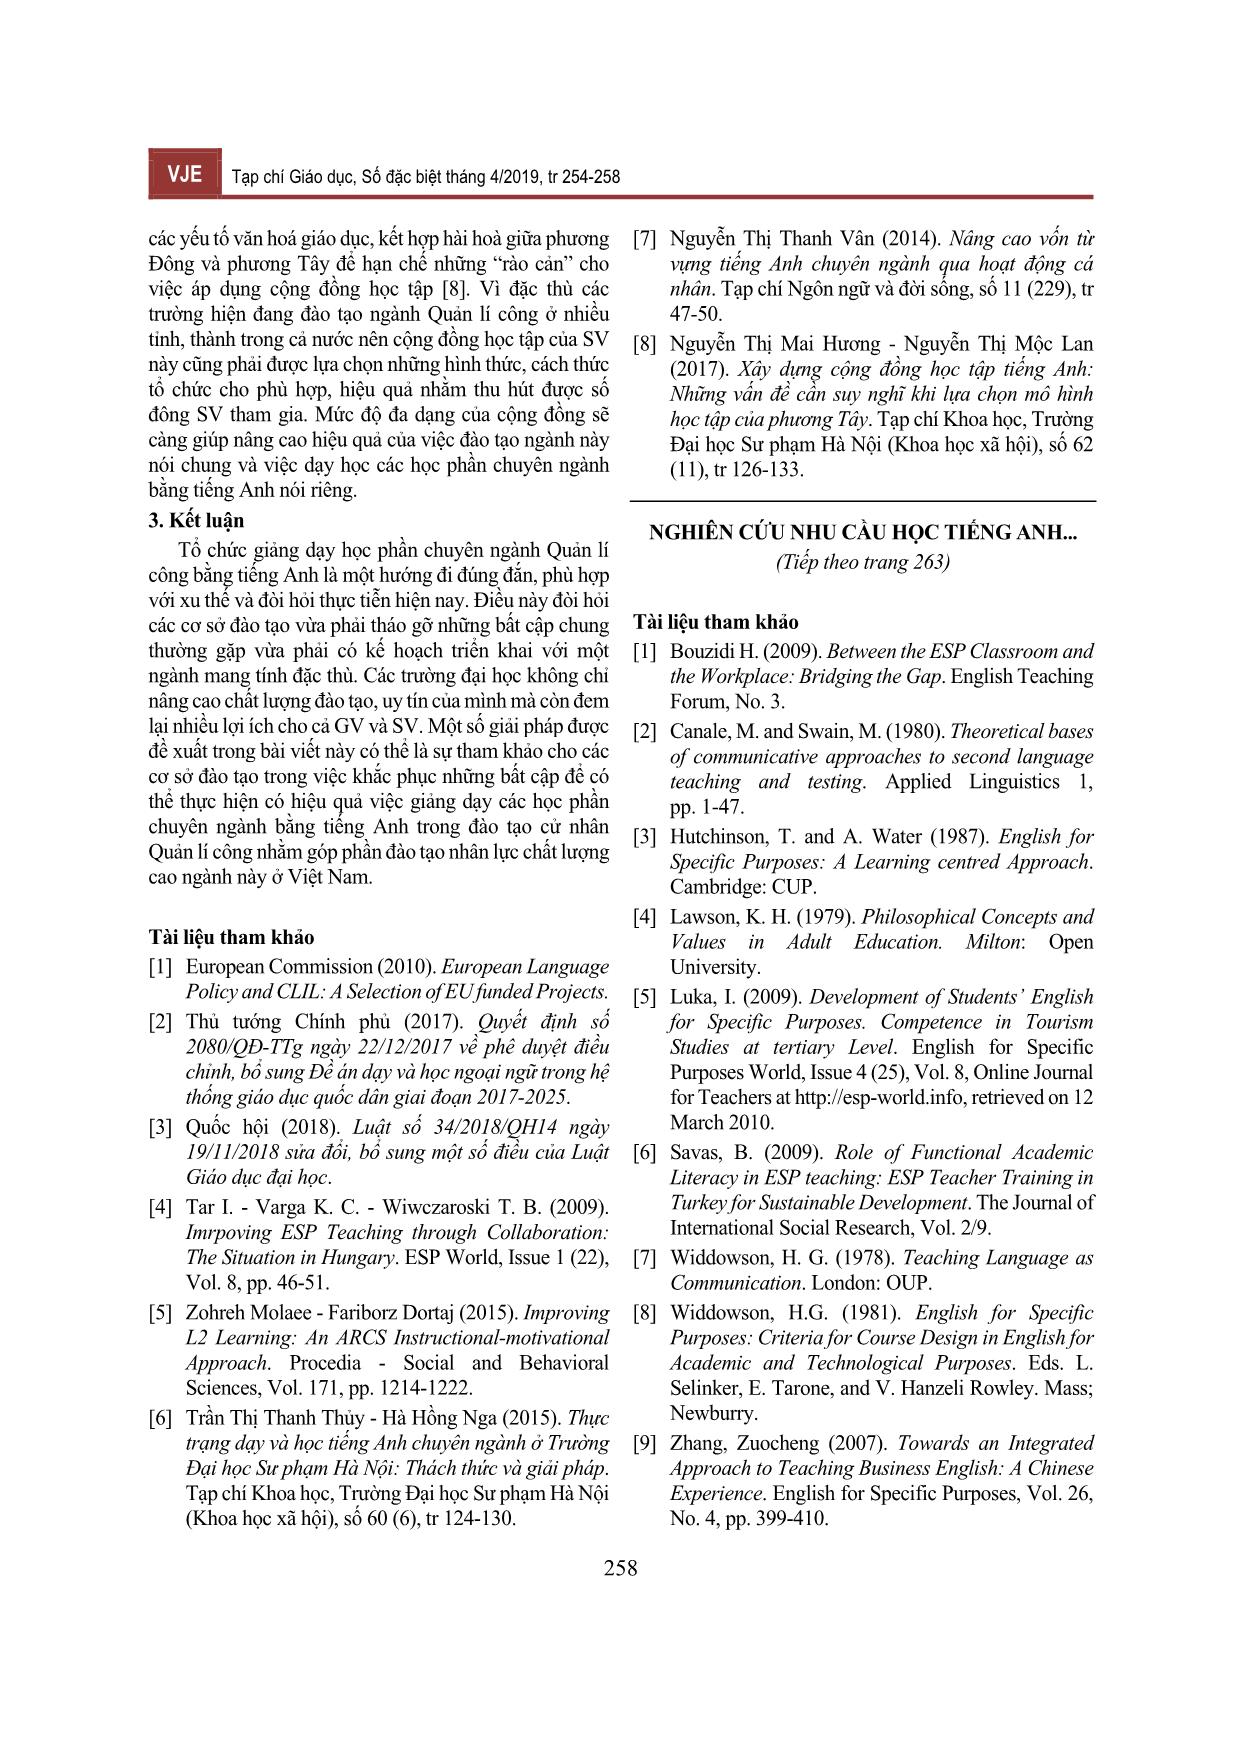 Nghiên cứu nhu cầu học tiếng Anh của các cán bộ công sở (viên chức) trên địa bàn tỉnh Thừa Thiên - Huế trang 6